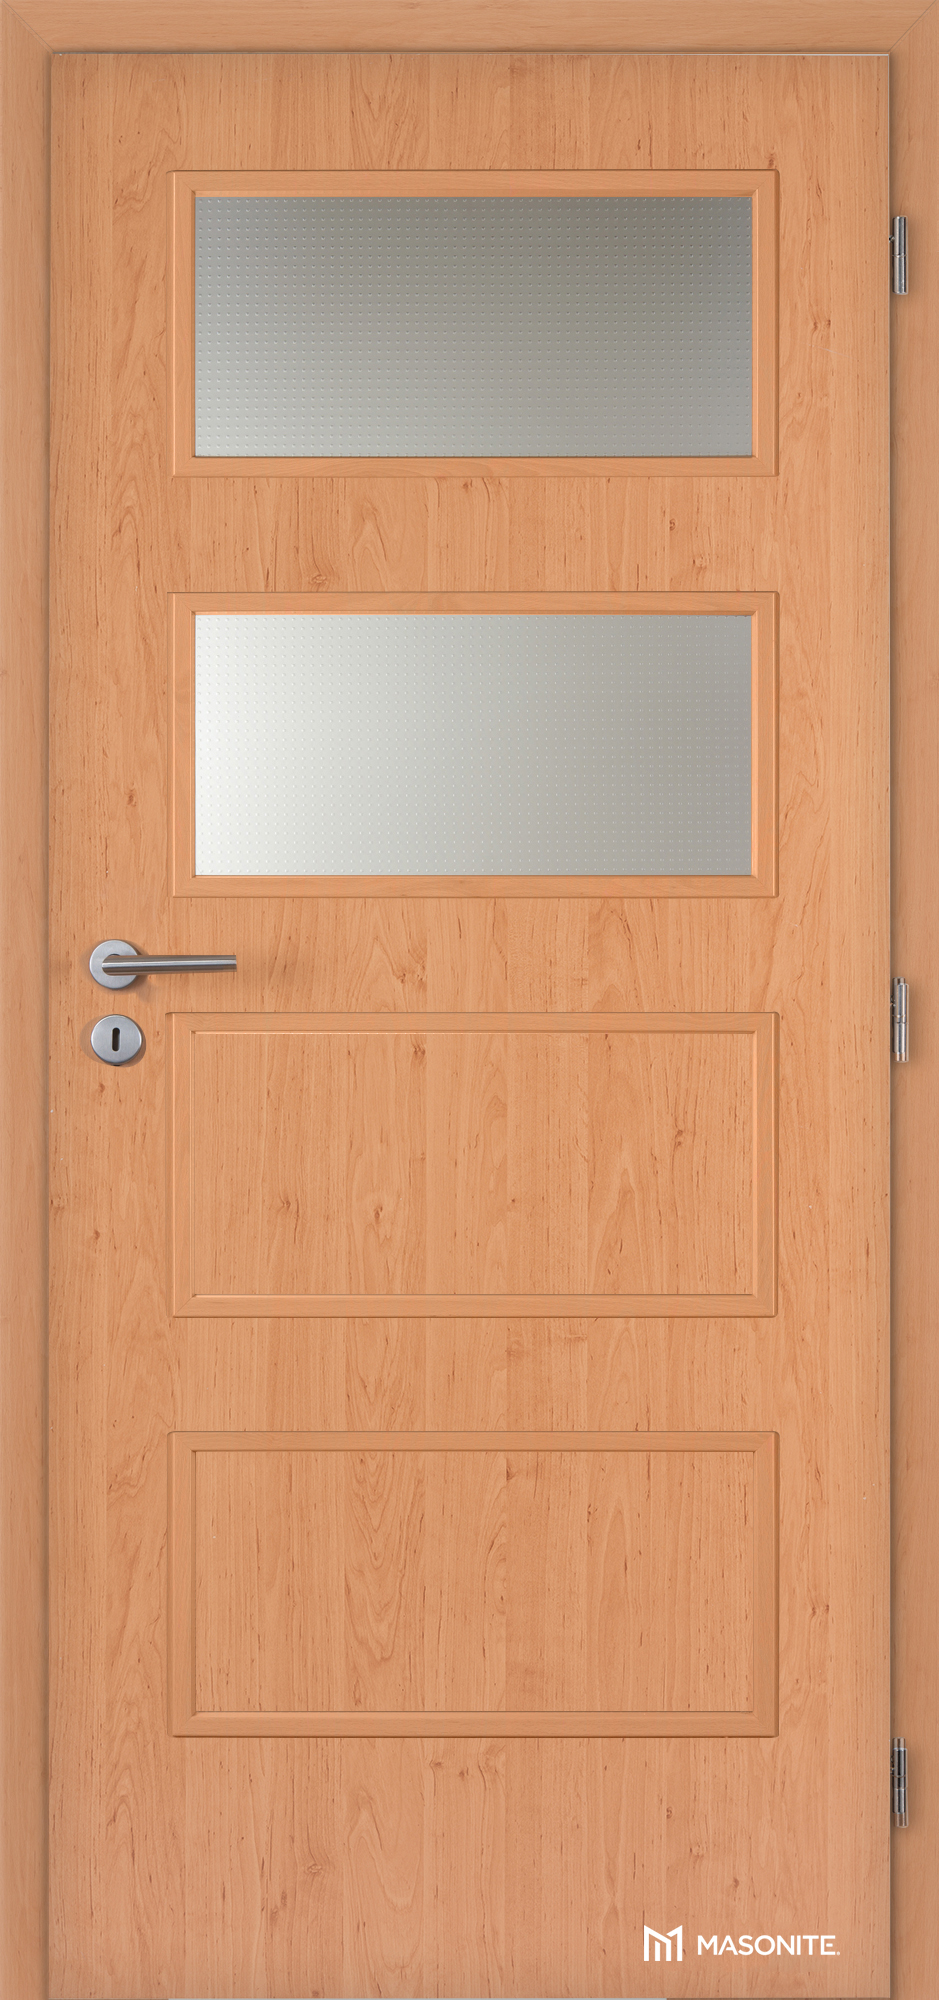 Dveře DTD DOMINANT 2x piskované sklo CPL olše